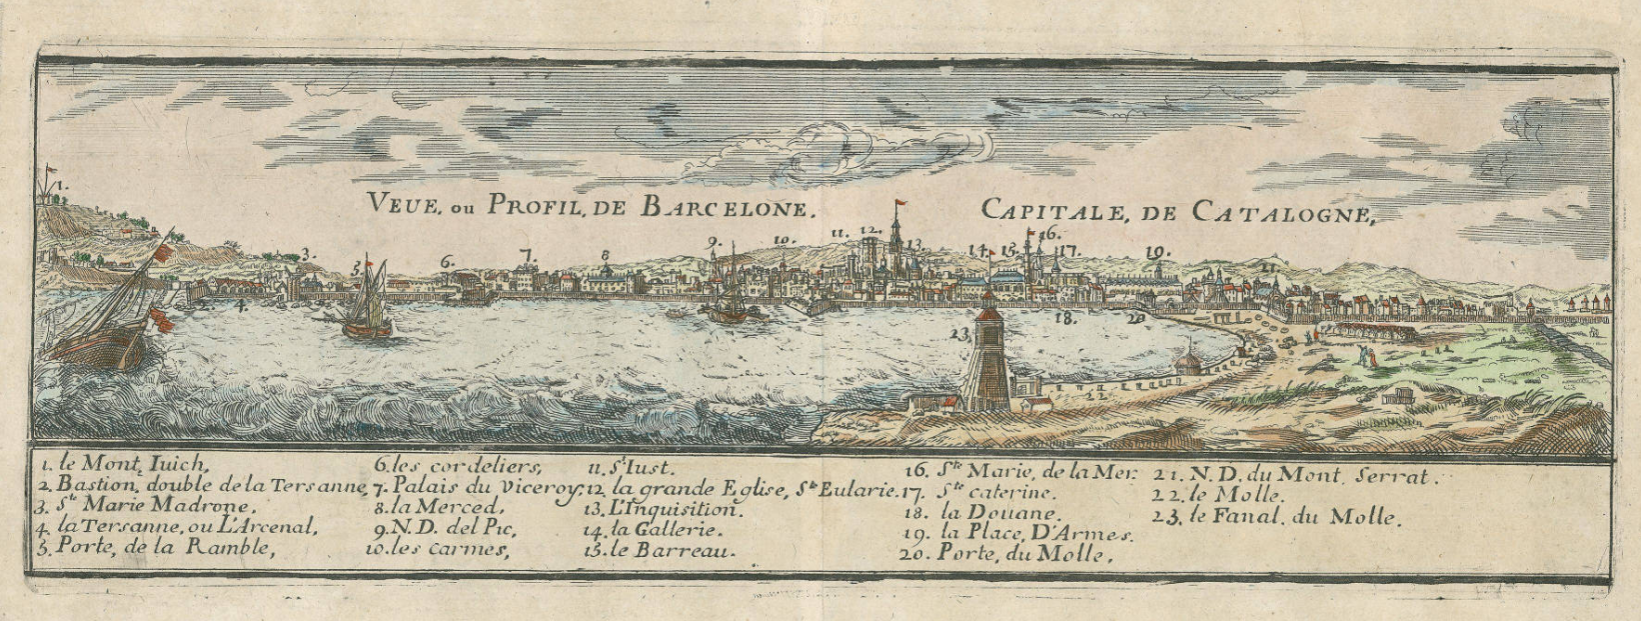 Vista de Barcelona (1696), obra de Nicolas de Fer. Font Cartoteca de Catalunya